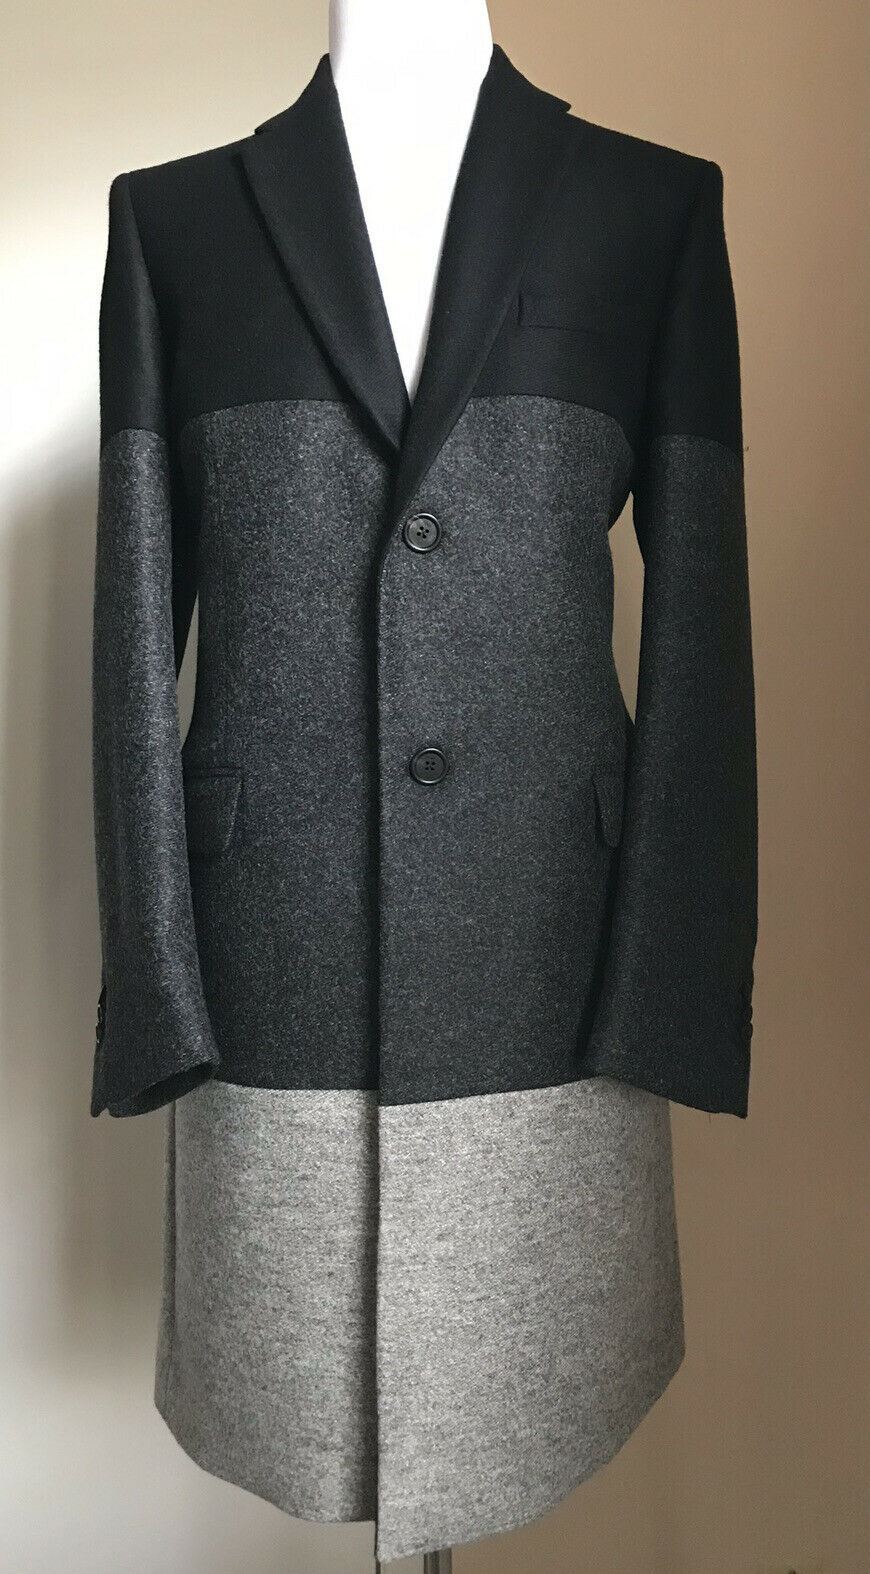 Новое мужское пальто Fendi черного/серого цвета за 2250 долларов, размер 44 США (54 Ita) Италия